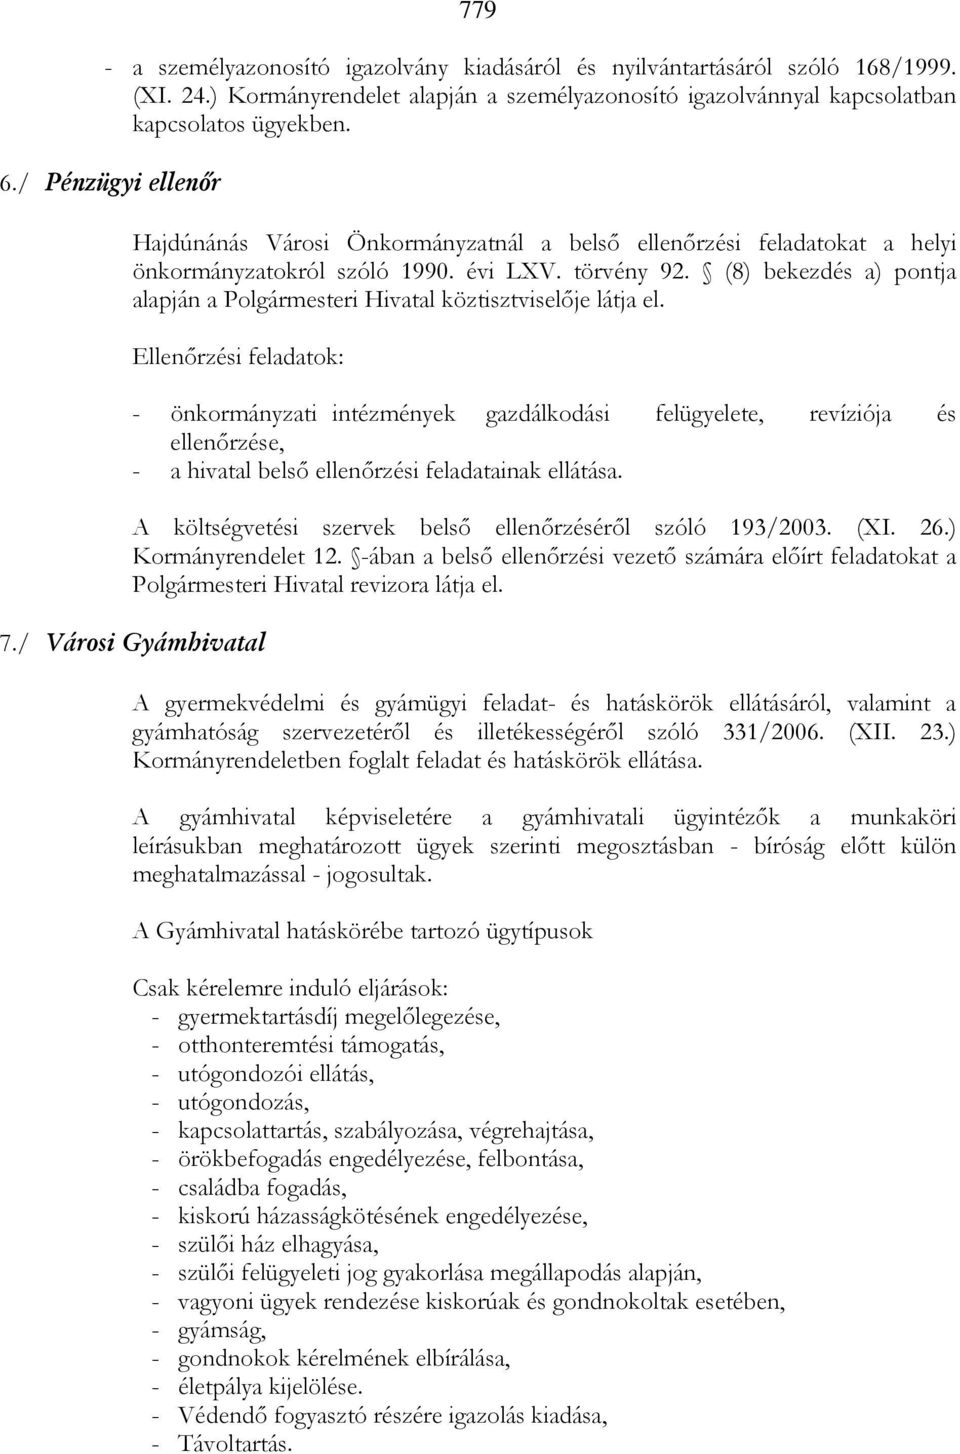 (8) bekezdés a) pontja alapján a Polgármesteri Hivatal köztisztviselıje látja el.